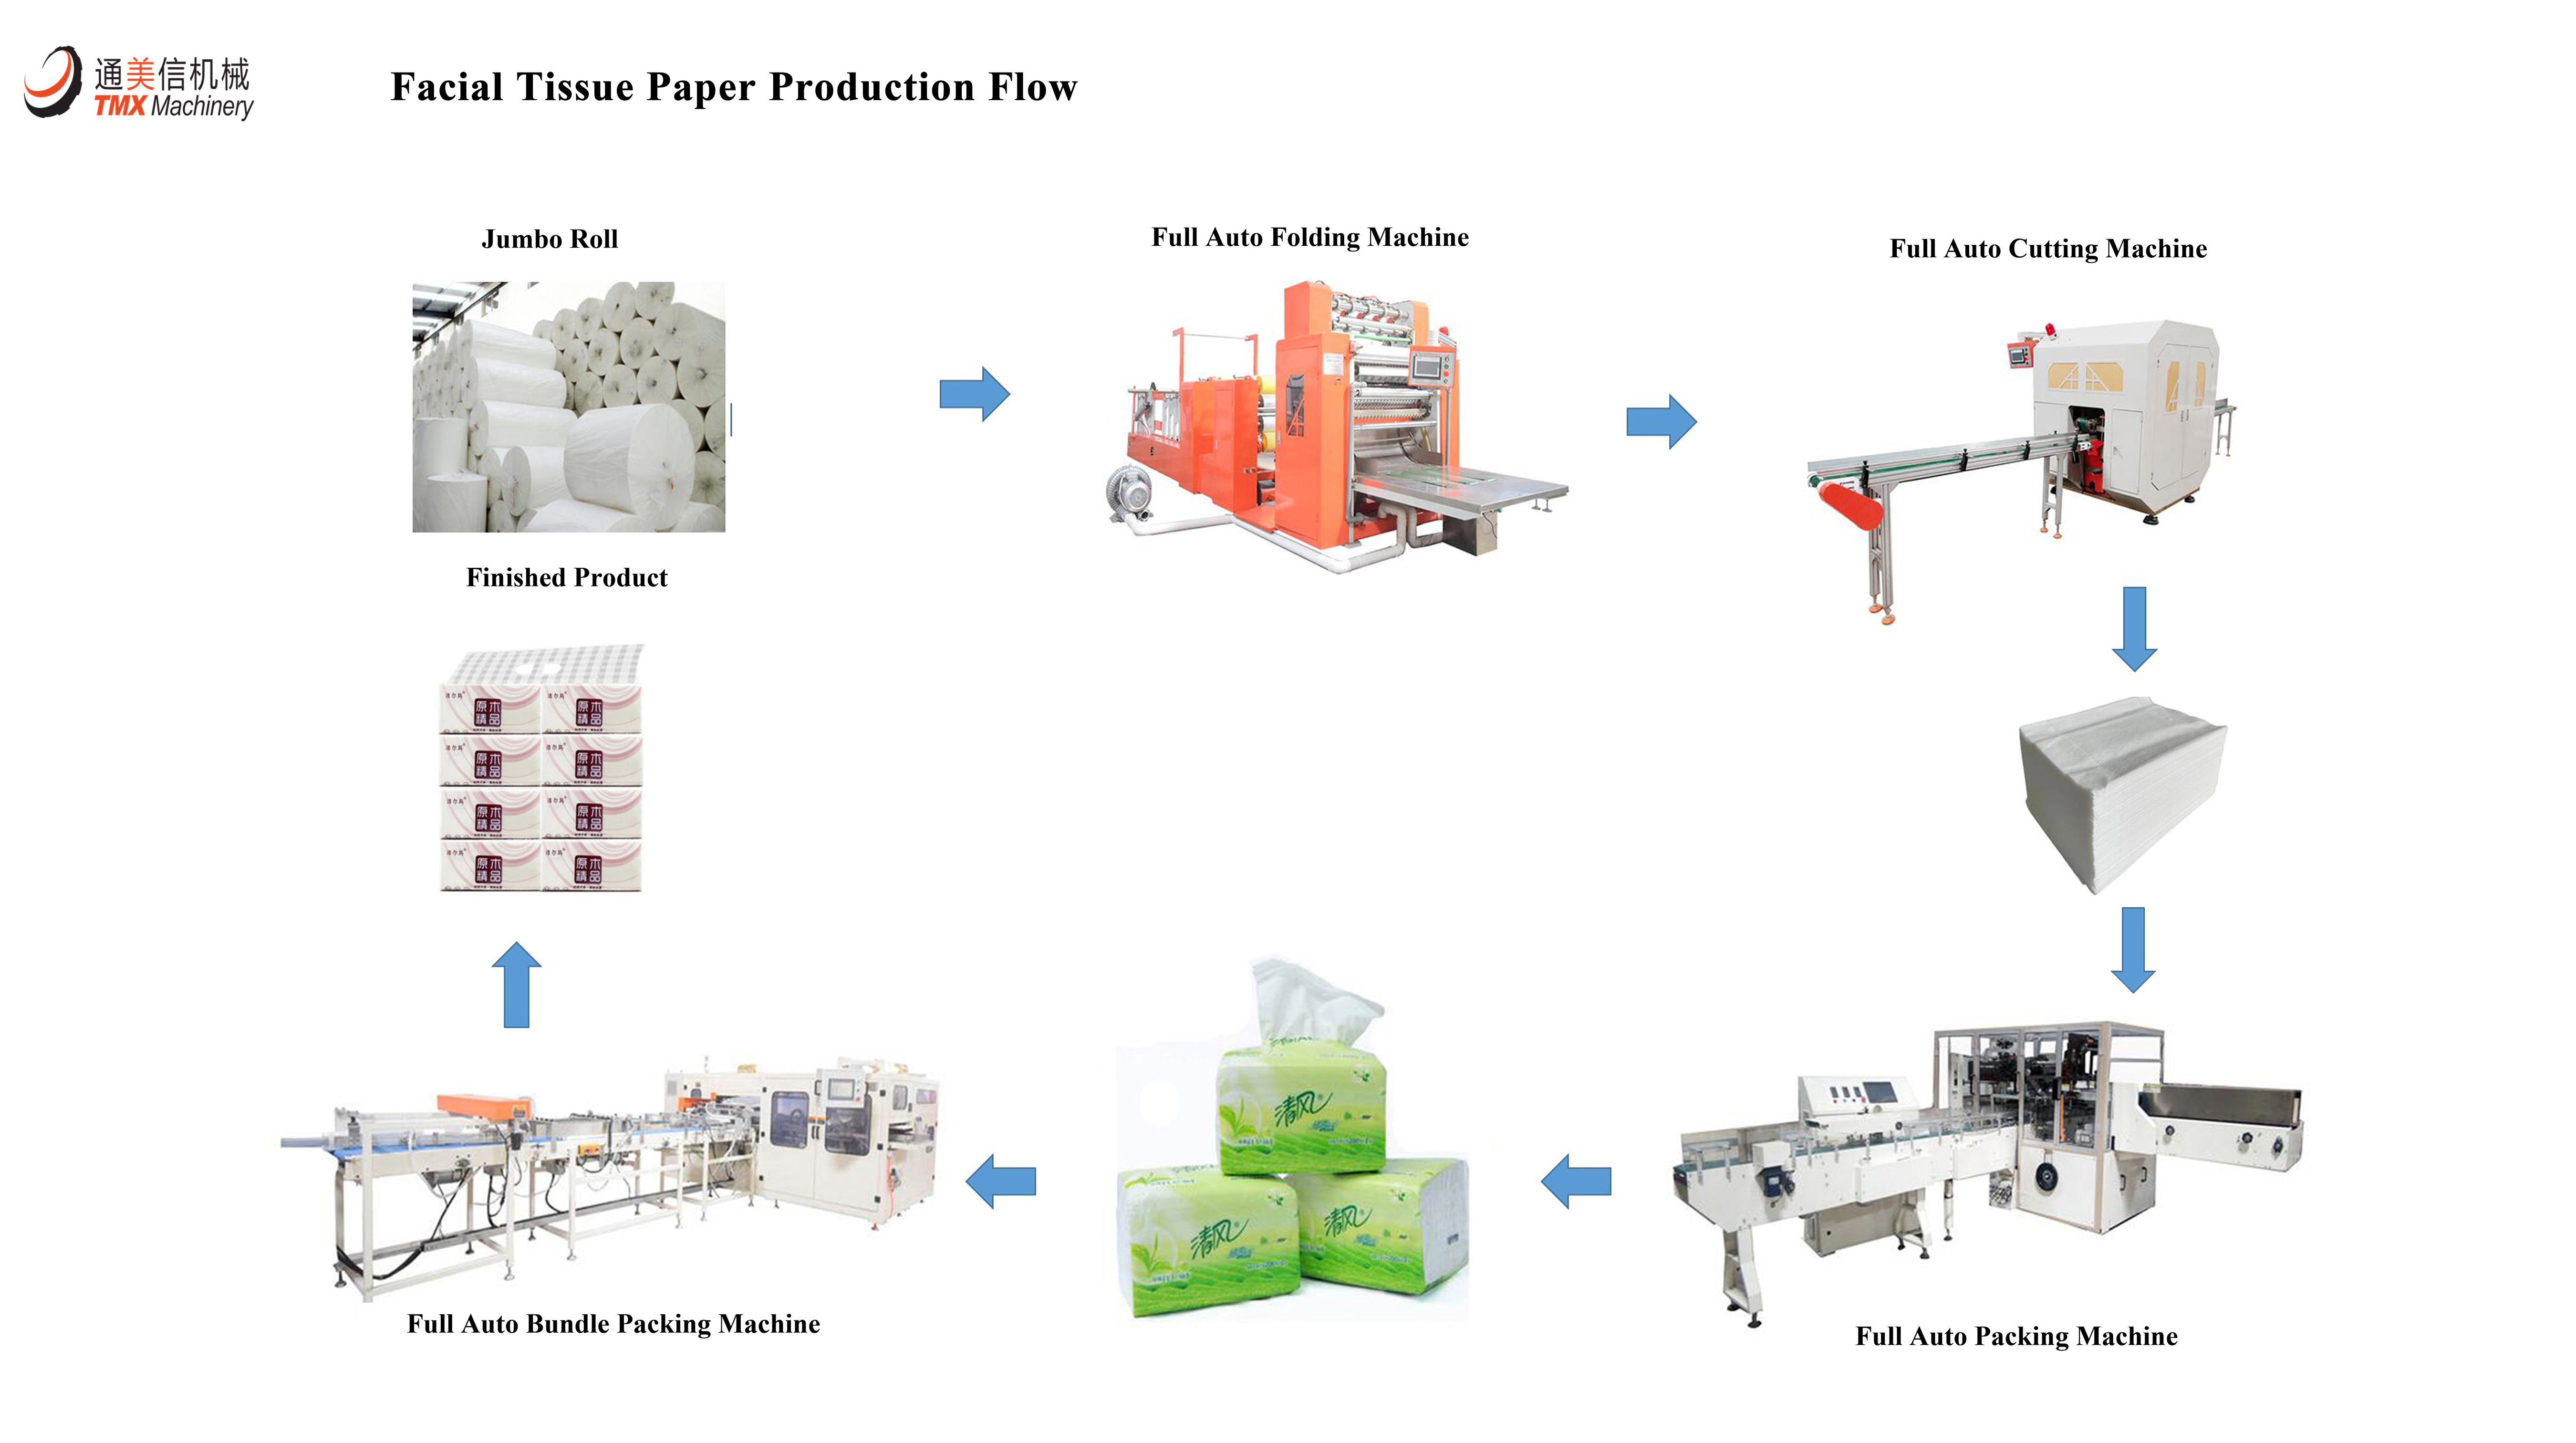 Bienvenue au client de KSA pour passer la commande d'une machine à mouchoirs en papier
